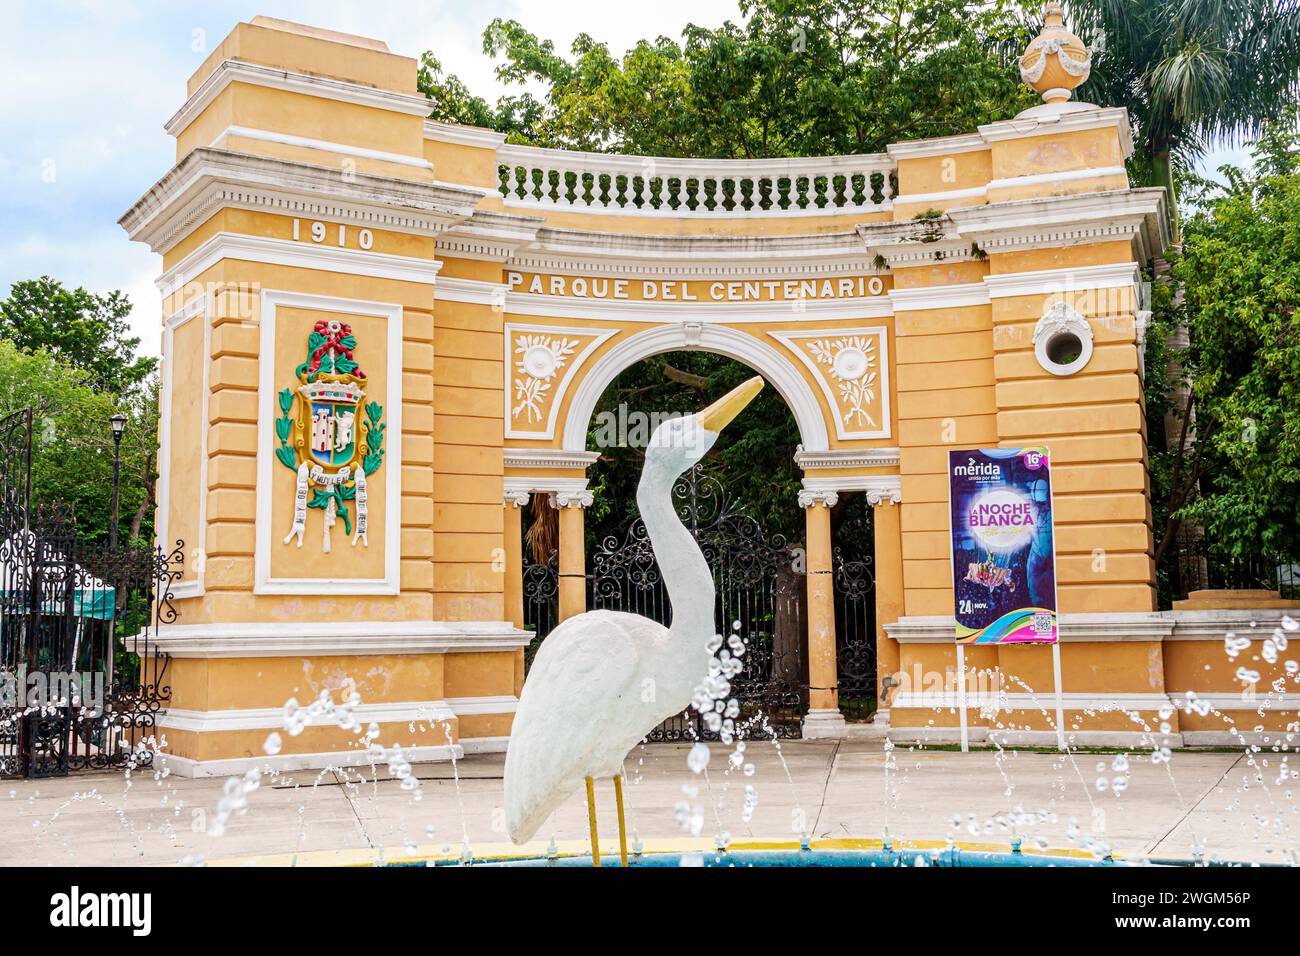 Merida Mexique, Parque Zoologico del Centenario parc public centenaire, arc d'entrée, fontaine publique statue d'oiseau d'aigrette blanche, blason d'armes ville, moi Banque D'Images